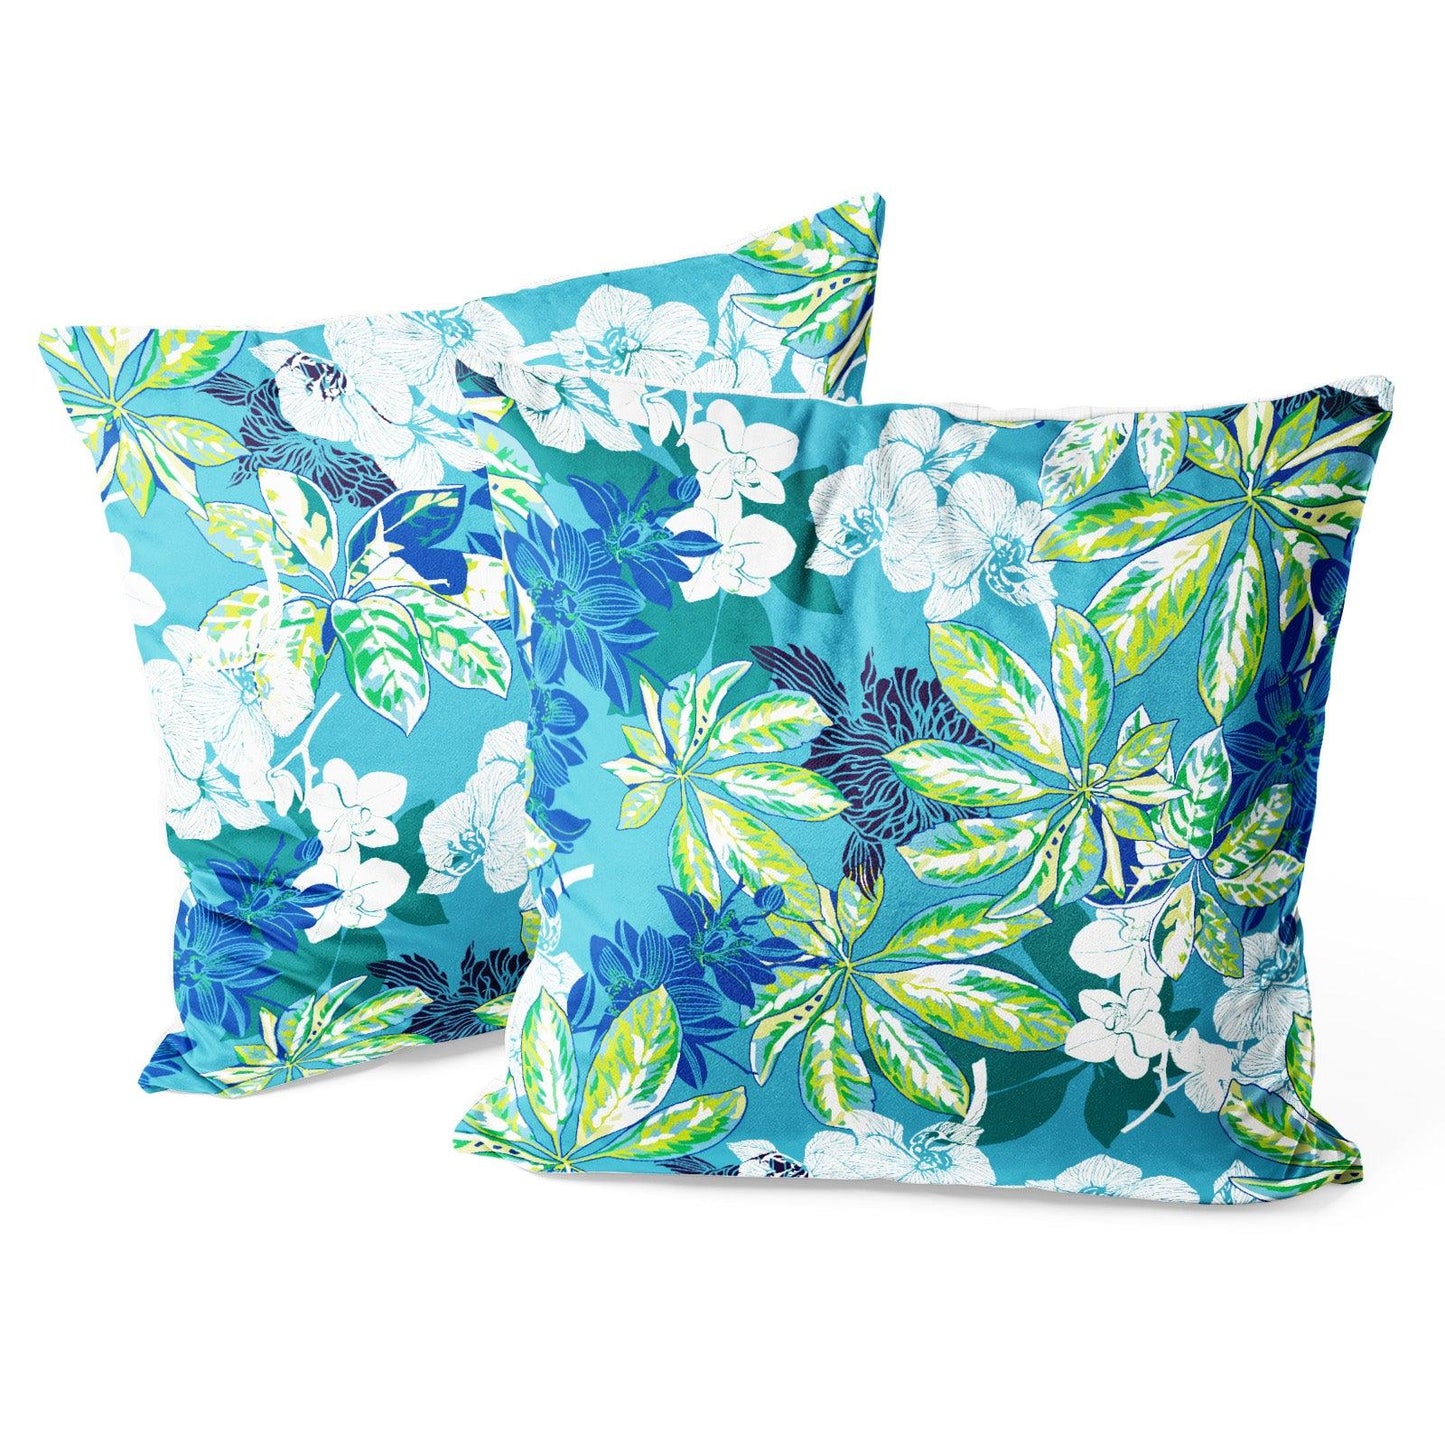 Modern Flower Throw Pillow Covers Pack of 2 18x18 Inch (Summer Time) - Berkin Arts